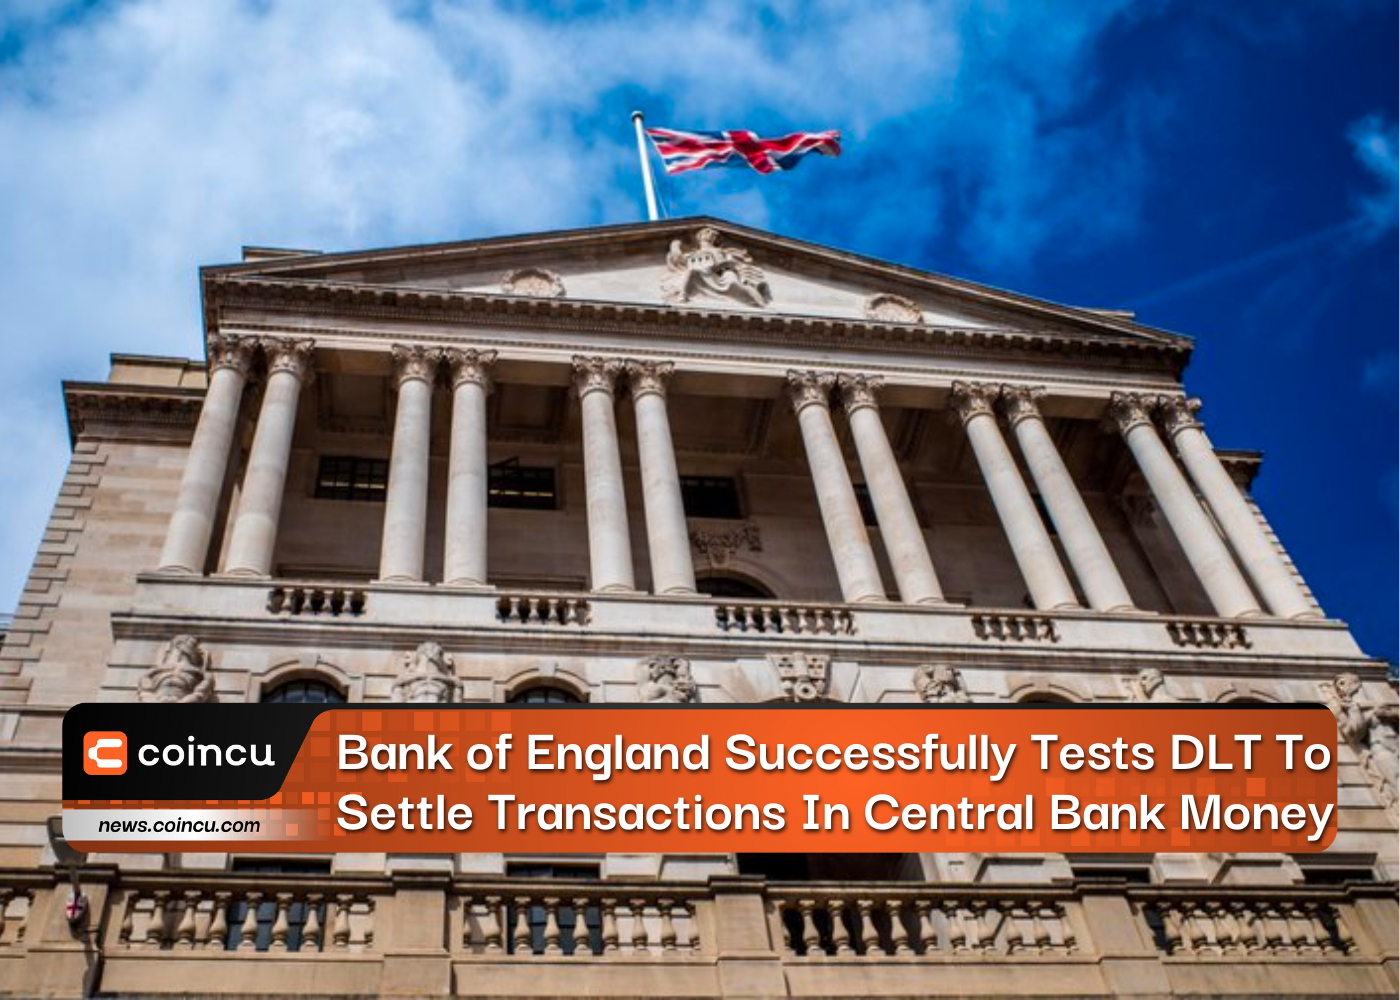 Ngân hàng Anh thử nghiệm thành công DLT để giải quyết các giao dịch bằng tiền ngân hàng trung ương